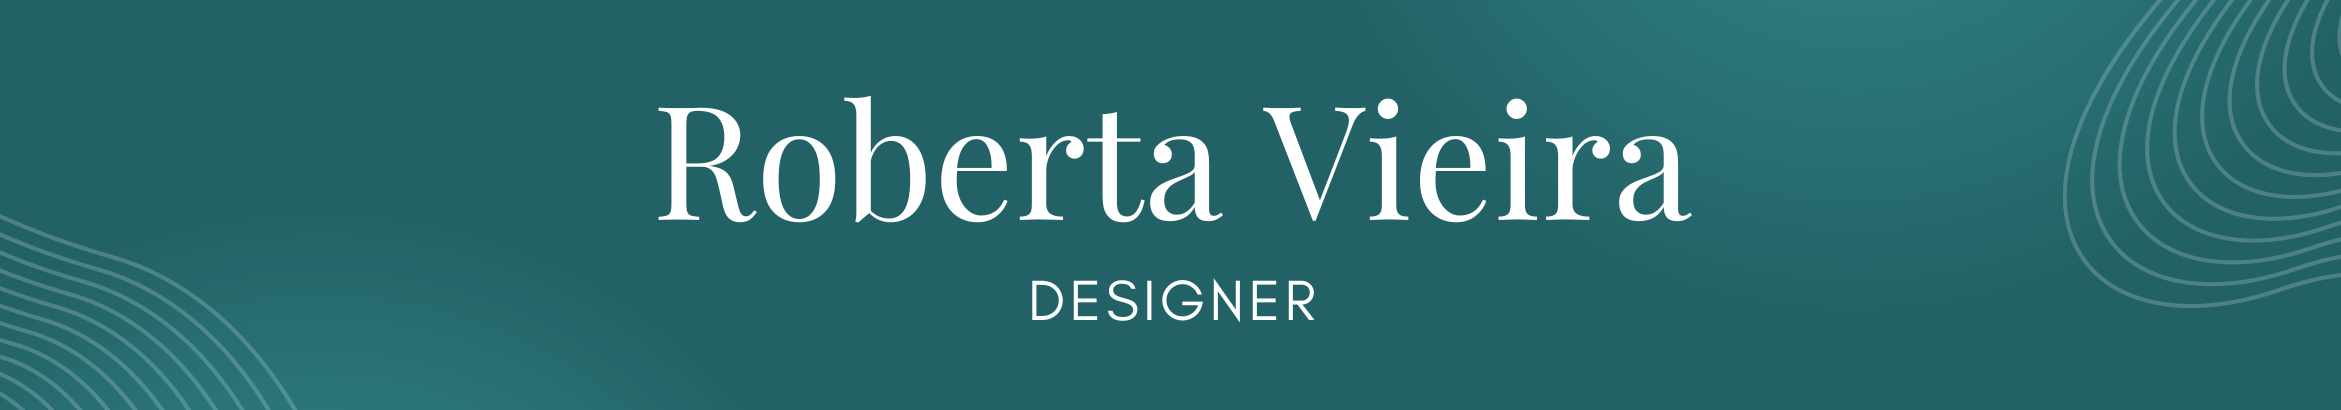 Roberta Vieira's profile banner